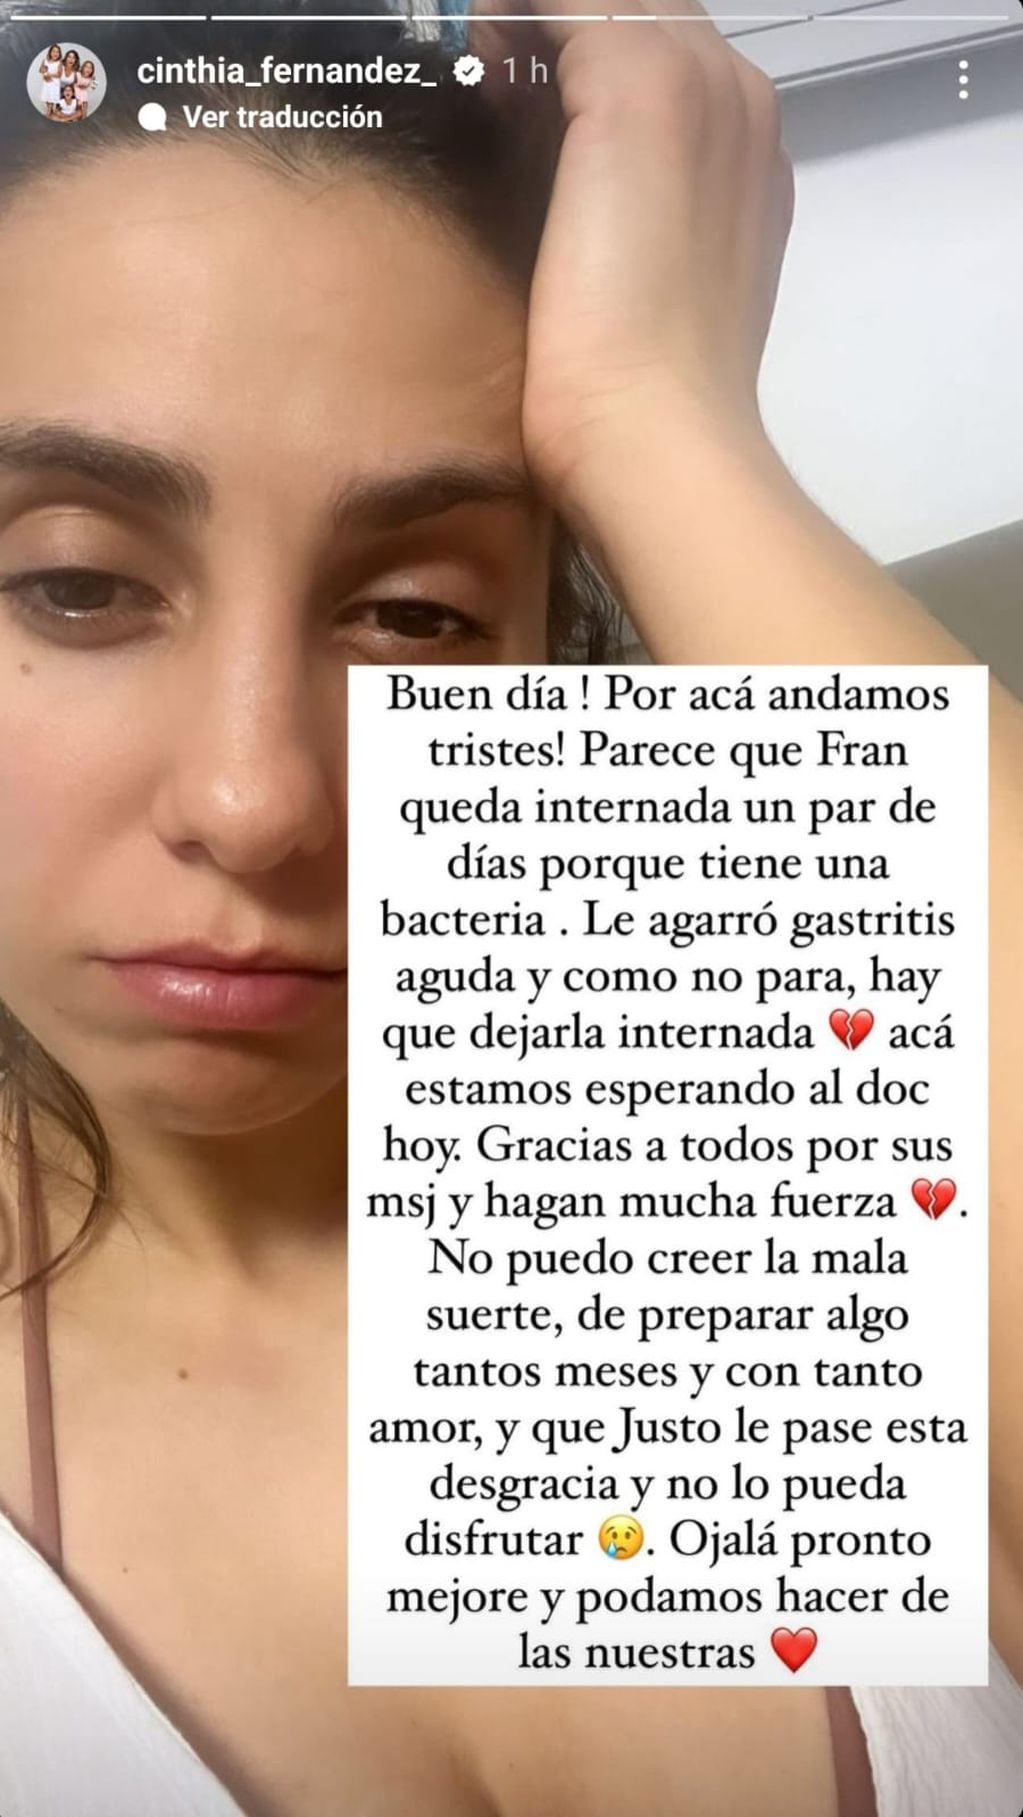 La explicación de Cinthia Fernández sobre lo que le pasó a su hija.